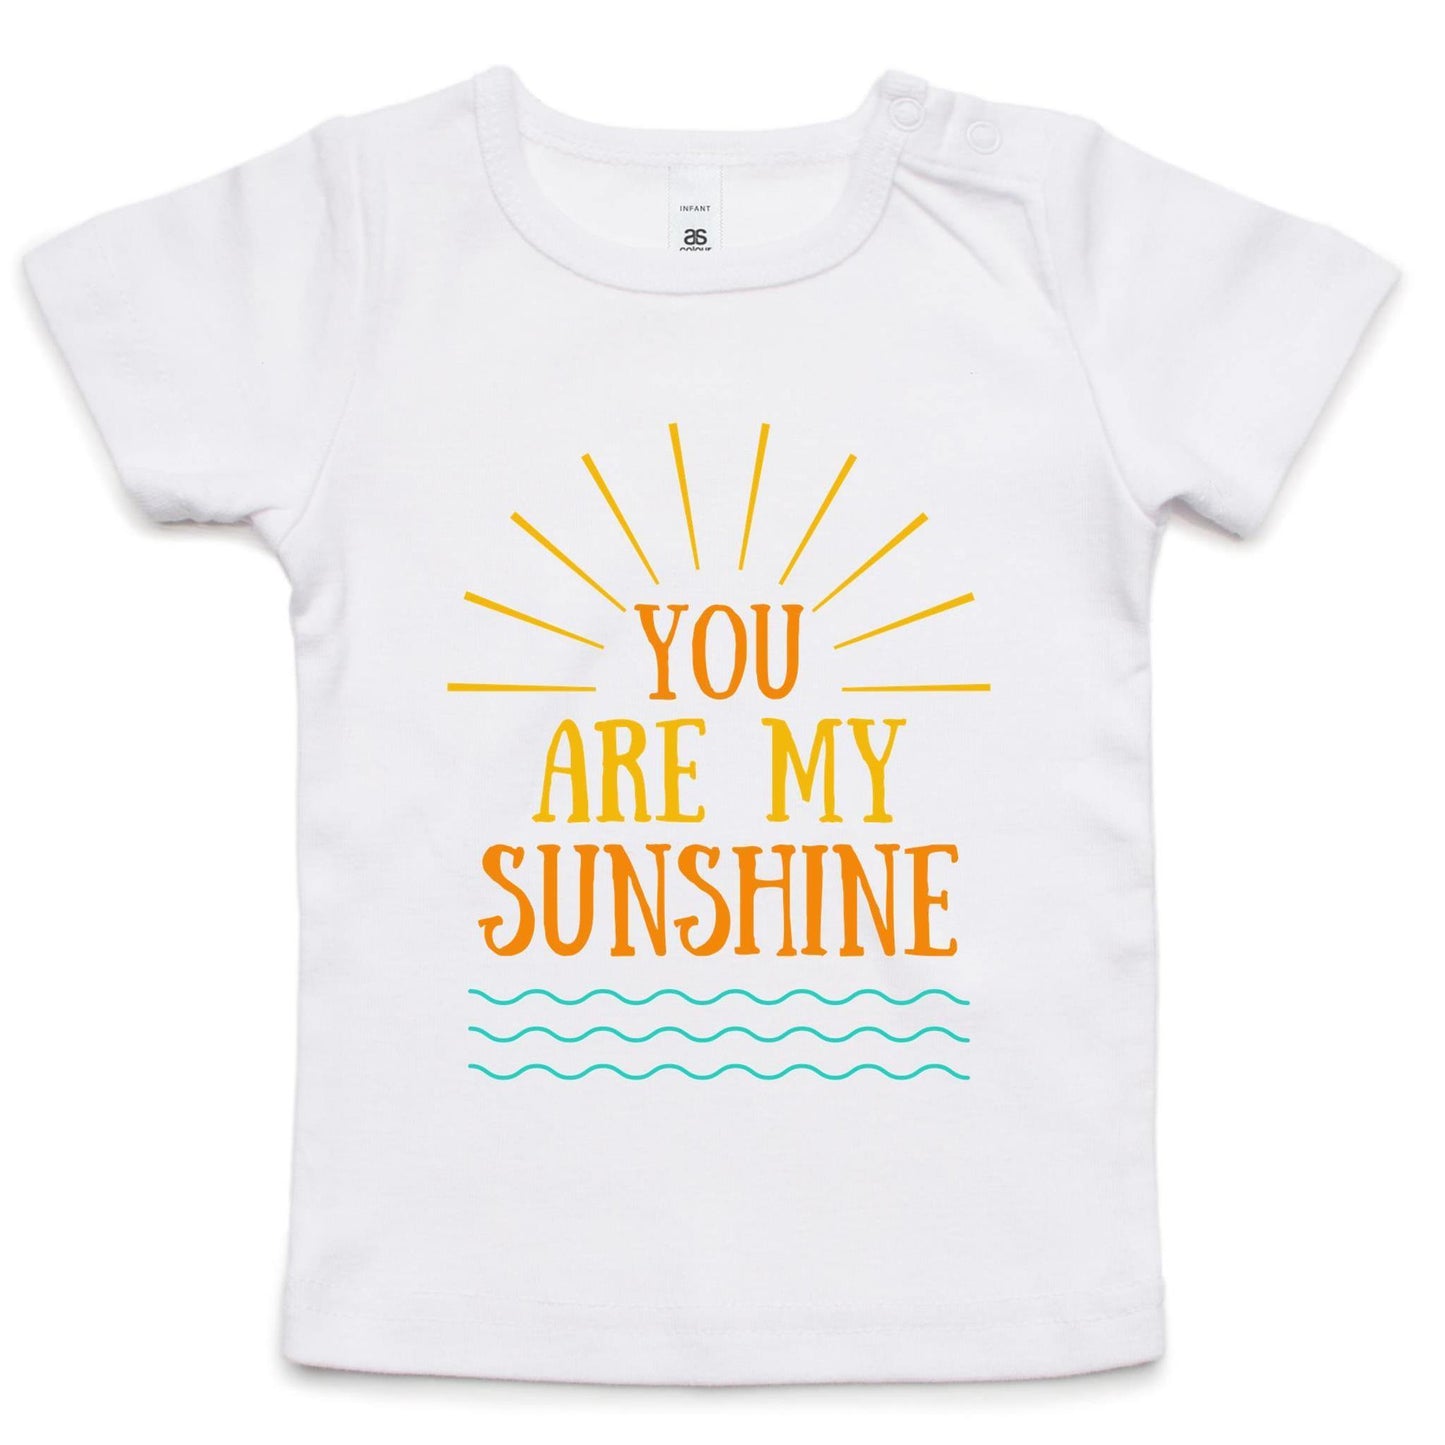 You Are My Sunshine - Baby T-shirt White Baby T-shirt kids